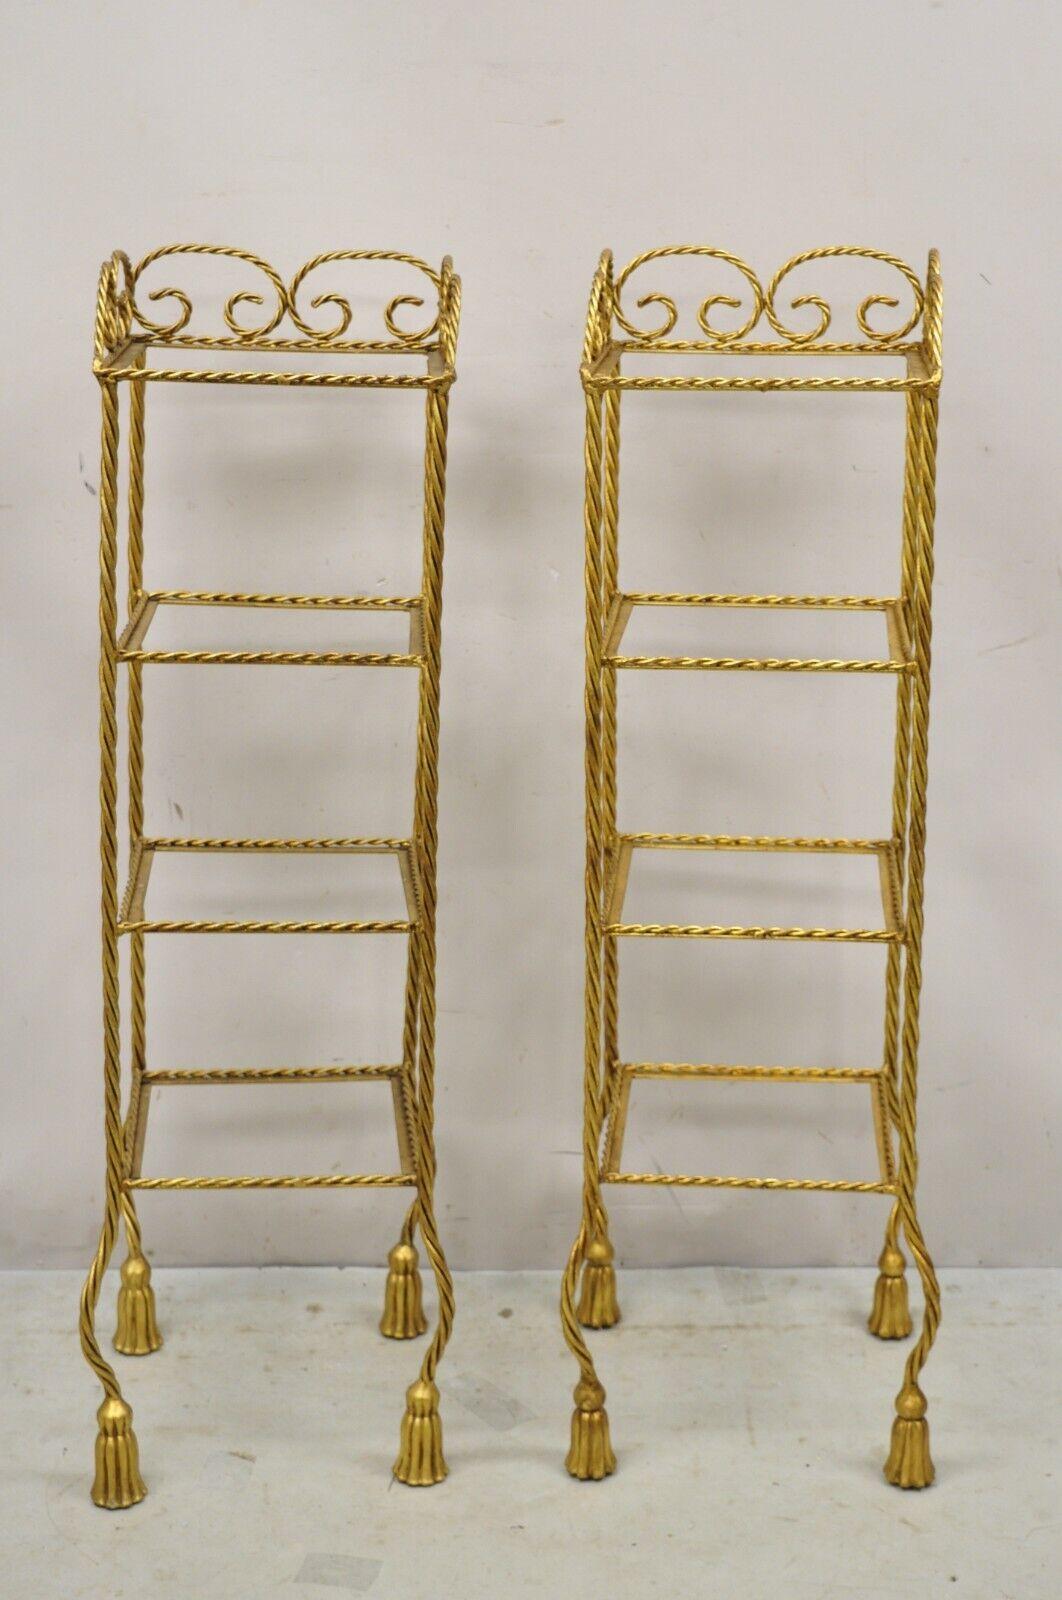 Vintage Italian Hollywood Regency Rope Tassel Gold 4 Tier Iron Display Rack Shelf - Pair. Artikelmerkmale Eisenrahmen, Gold vergoldet, Quaste Form Füße, 4 Etagen (kein Glas), sehr schöne Vintage-Paar, Qualität italienischer Handwerkskunst, schöne